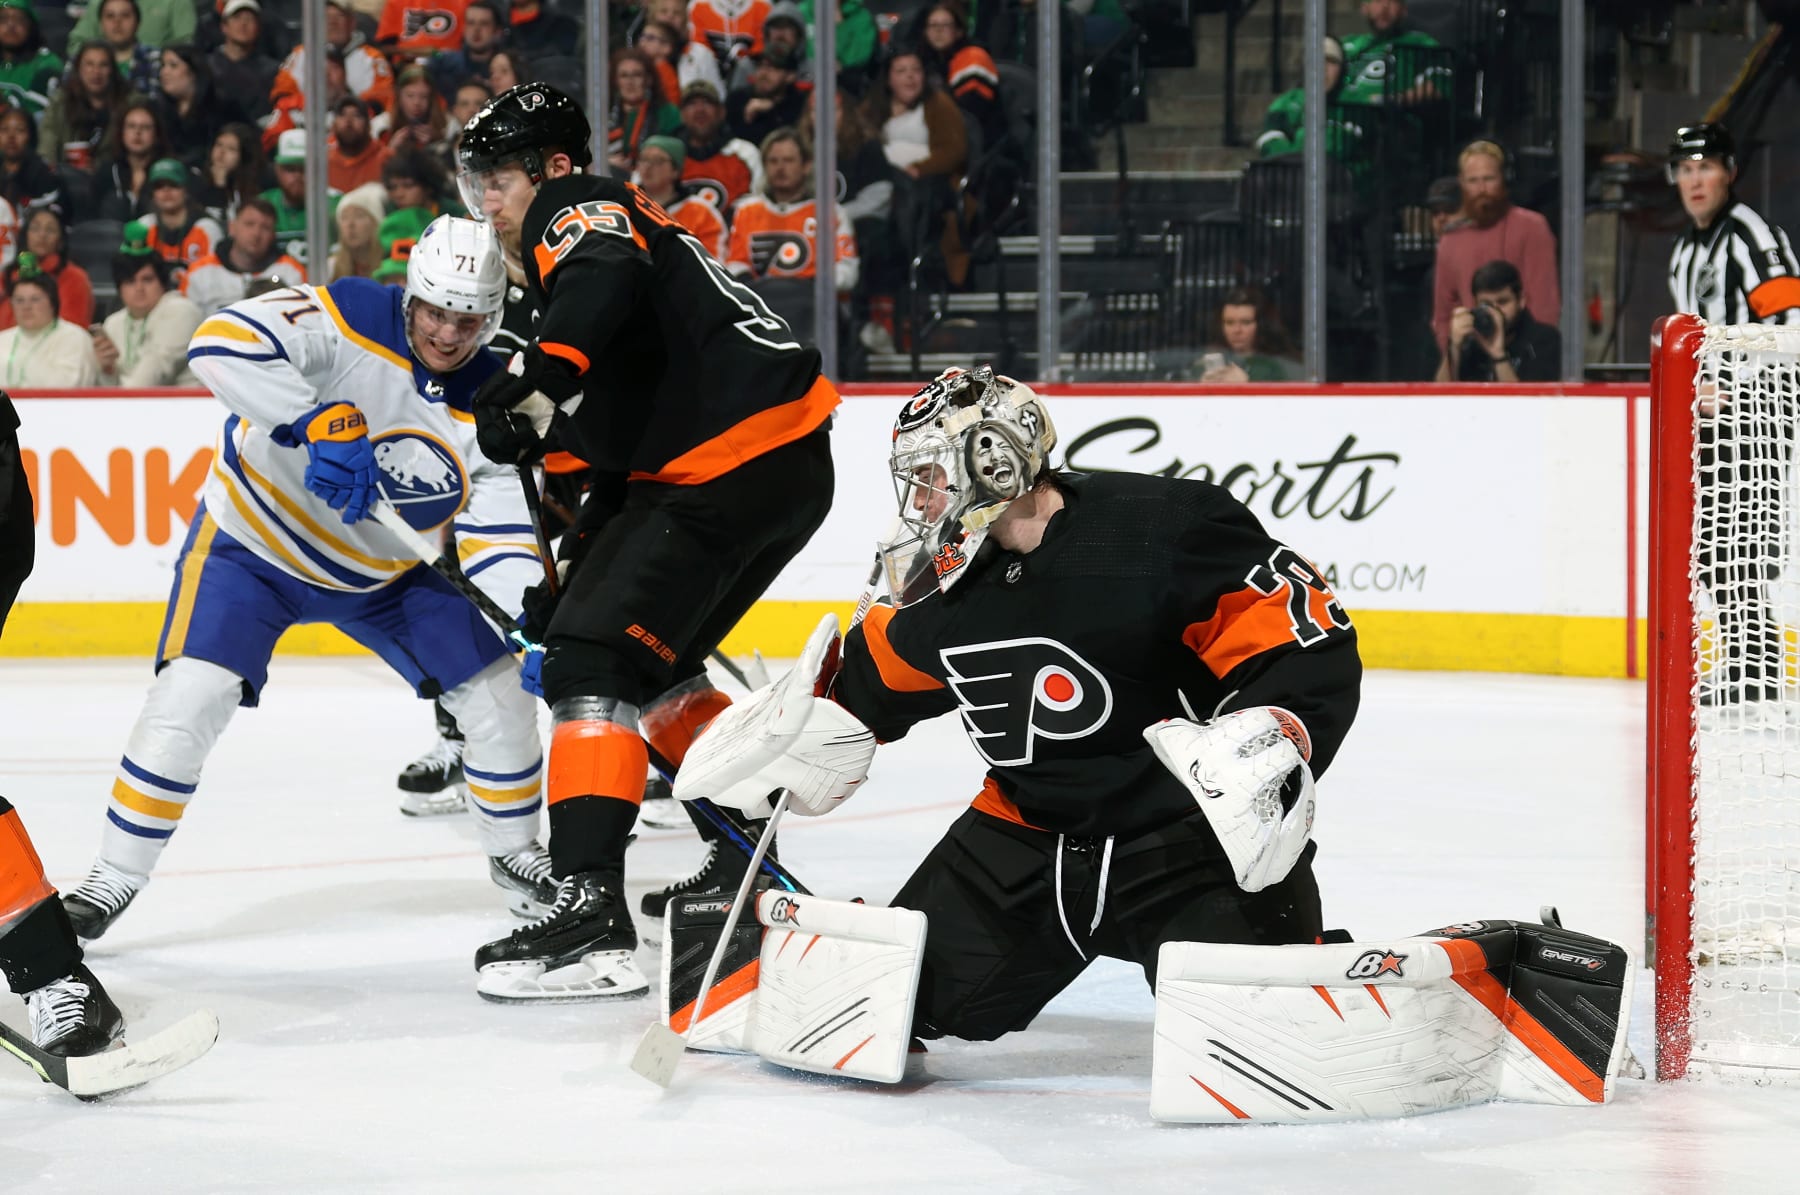 Philadelphia Flyers re-sign goalie Carter Hart for 3-year